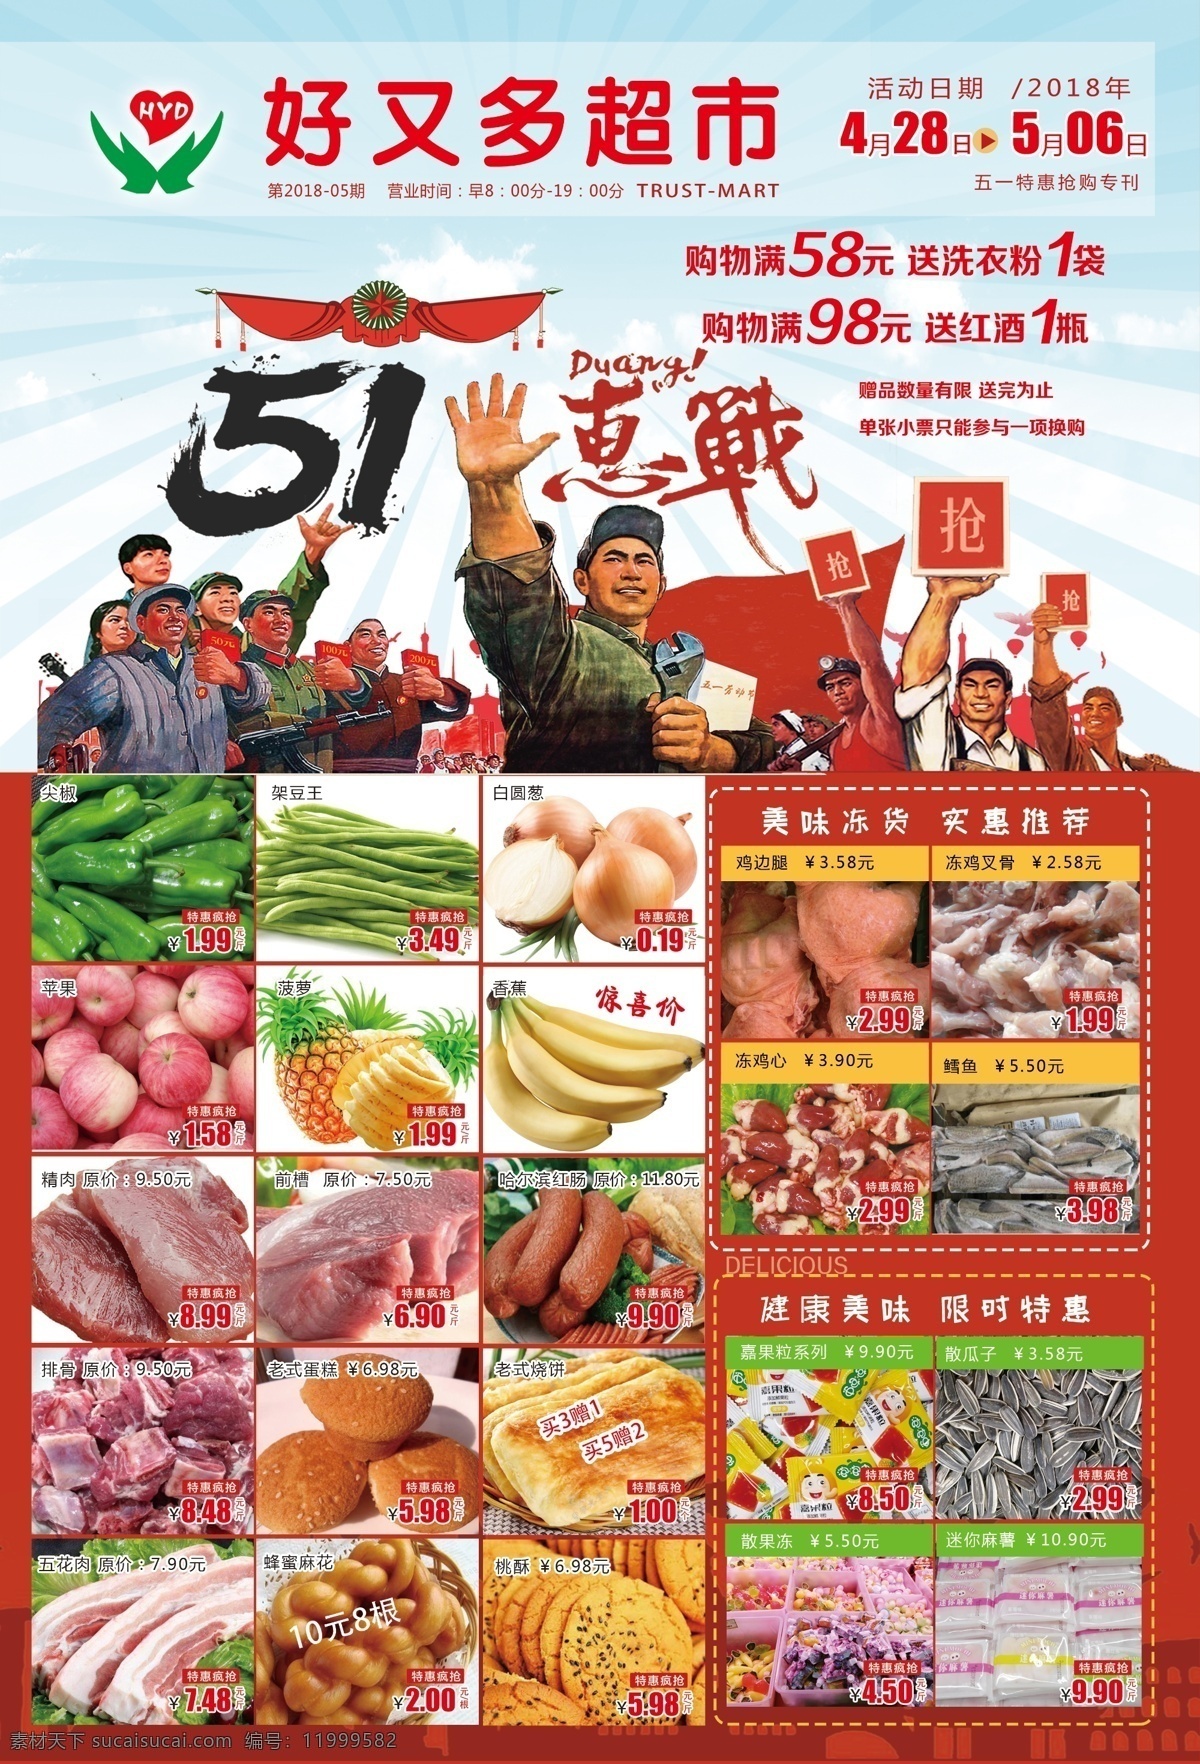 超市dm 五一 宣传单 超市宣传单 五一大会战 五一海报 五一超市海报 dm宣传单